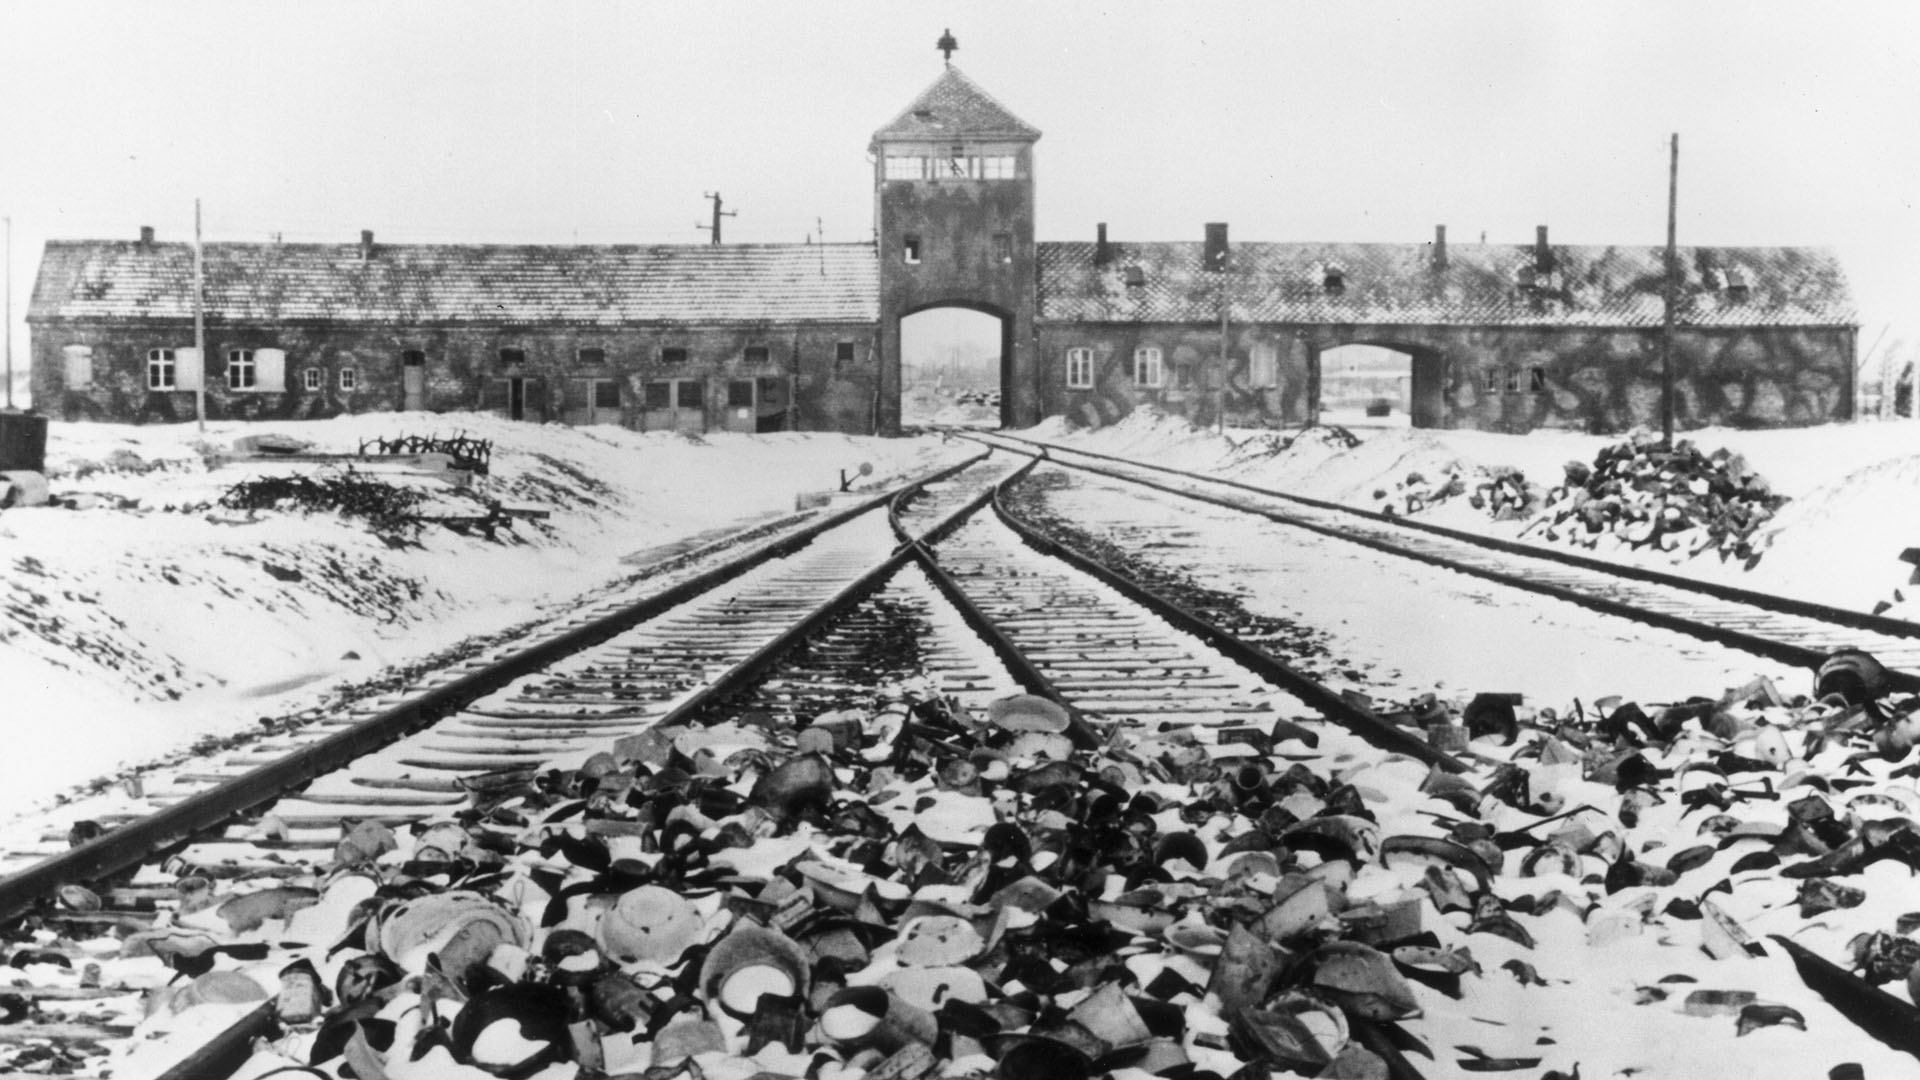 Una postal de 1945. Los efectos personales cubiertos de nieve de los deportados al campo de concentración de Auschwitz ensucian las vías del tren que conducen a la entrada del campo (Hulton Archive/Getty Images)